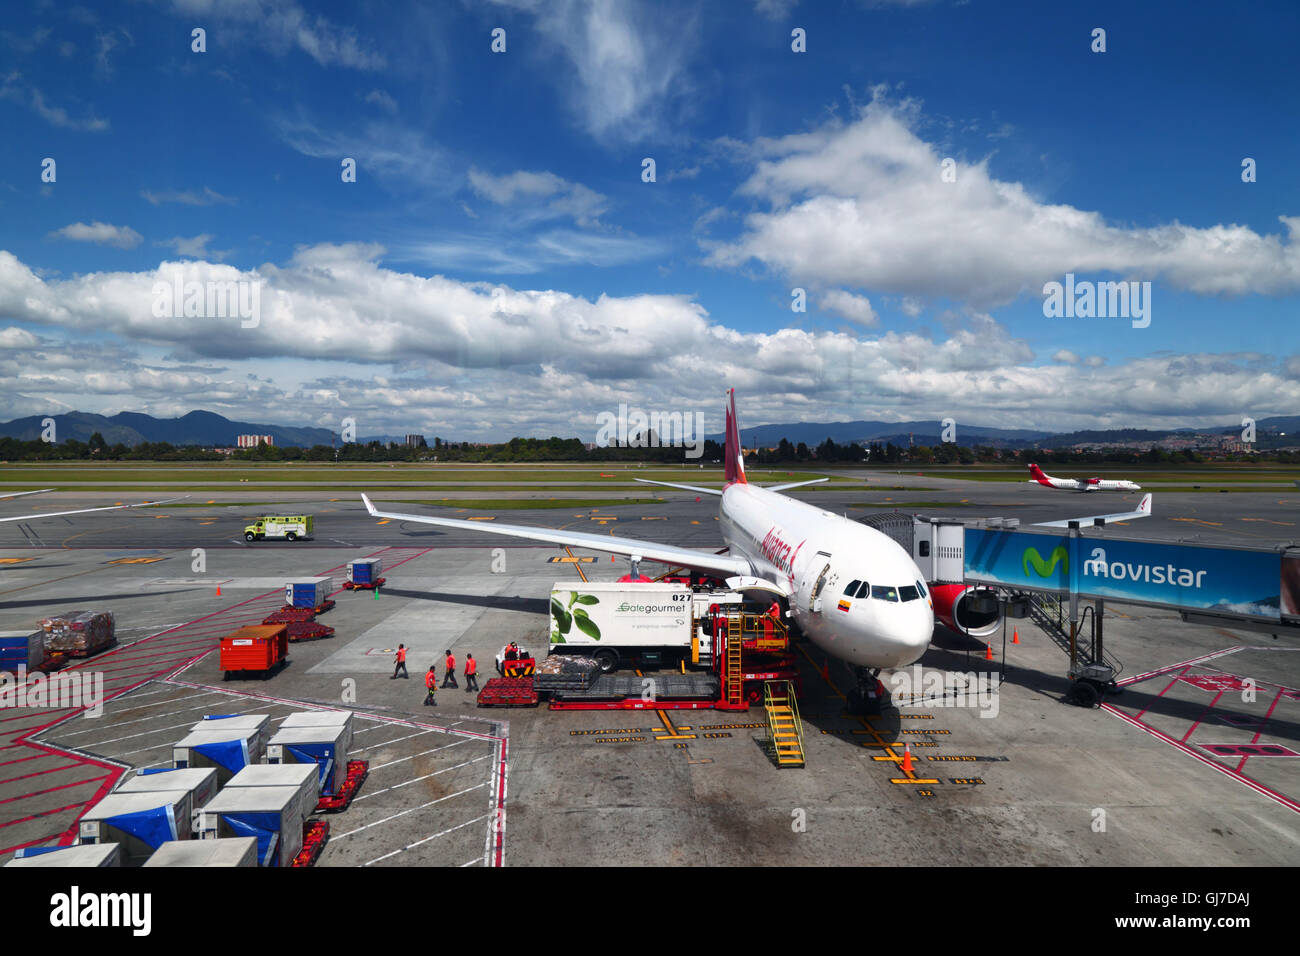 L'avion de ligne Avianca Airbus A330 est en préparation pour le prochain vol sur la rampe d'accès à l'aérogare de l'aéroport international El Dorado, Bogotá, Colombie Banque D'Images